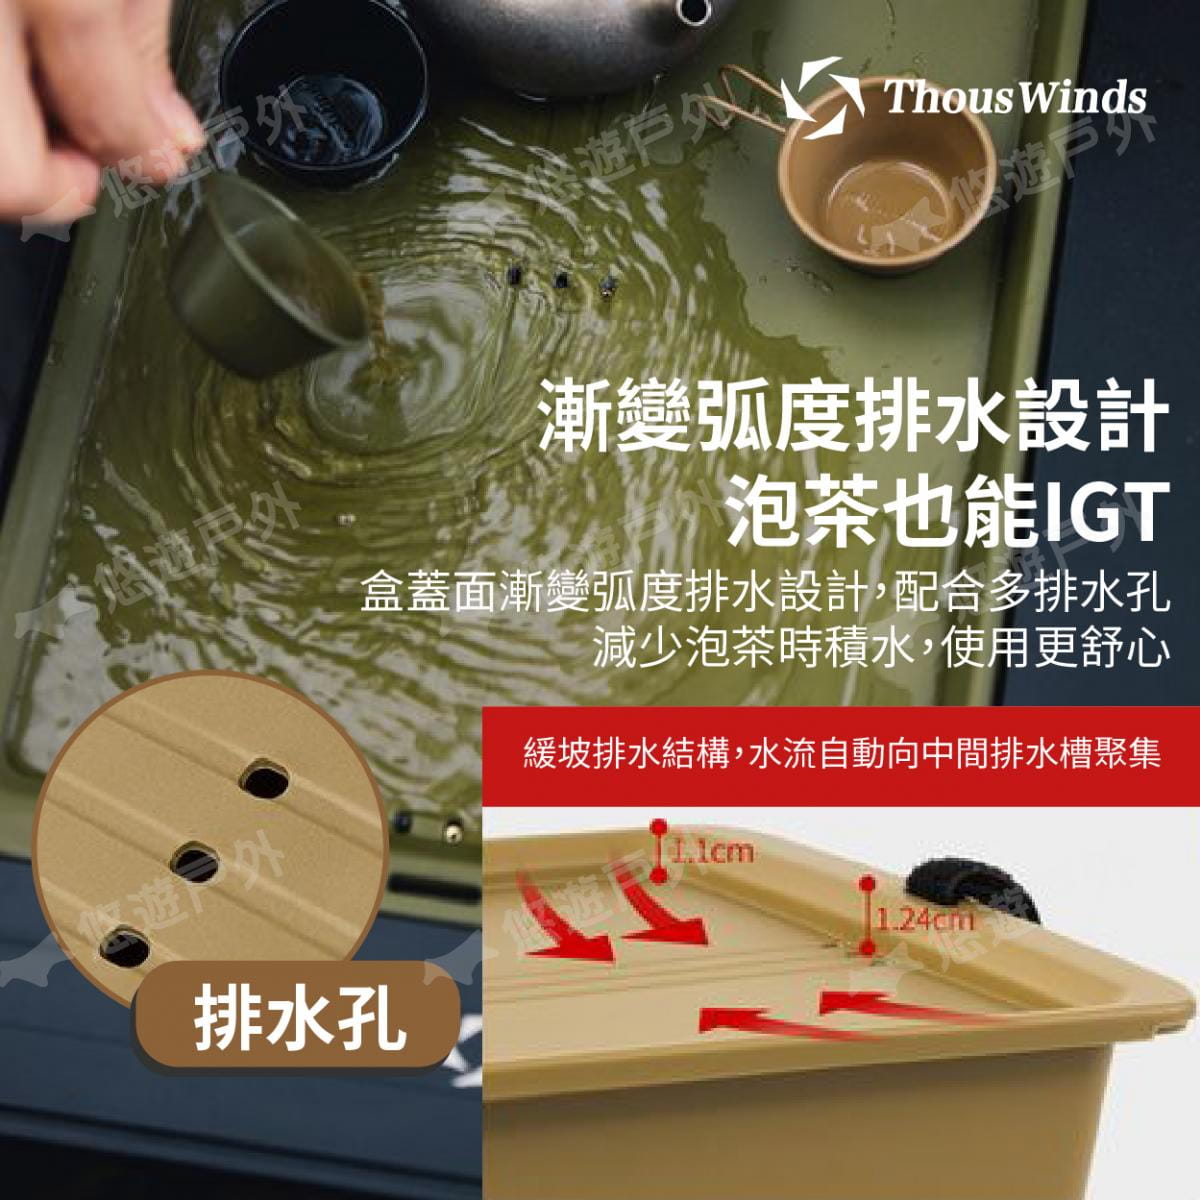 【Thous Winds】 一單元收納茶盒 三色 TW-IGT09B/G/K 悠遊戶外 3